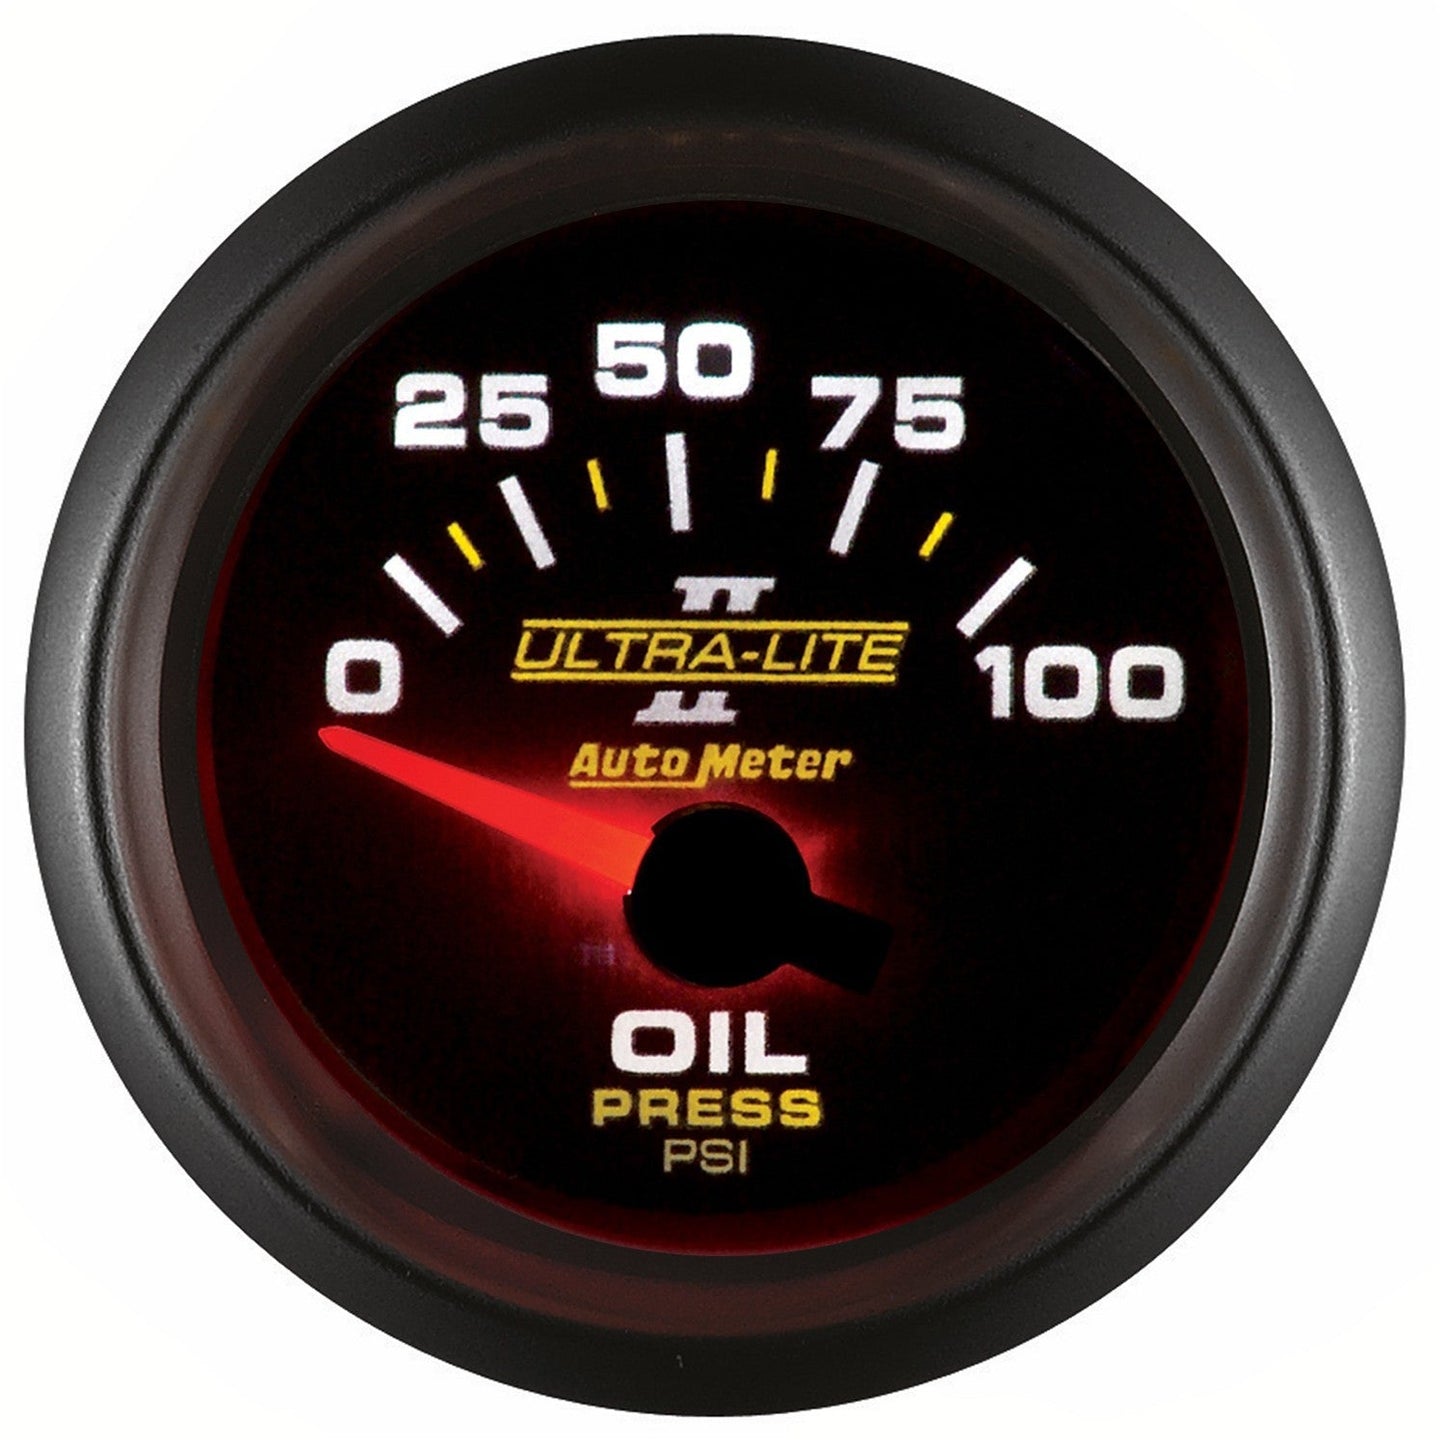 AutoMeter - 2-1/16" OIL PRESSURE, 0-100 PSI, AIR-CORE, ULTRA-LITE II (4927)